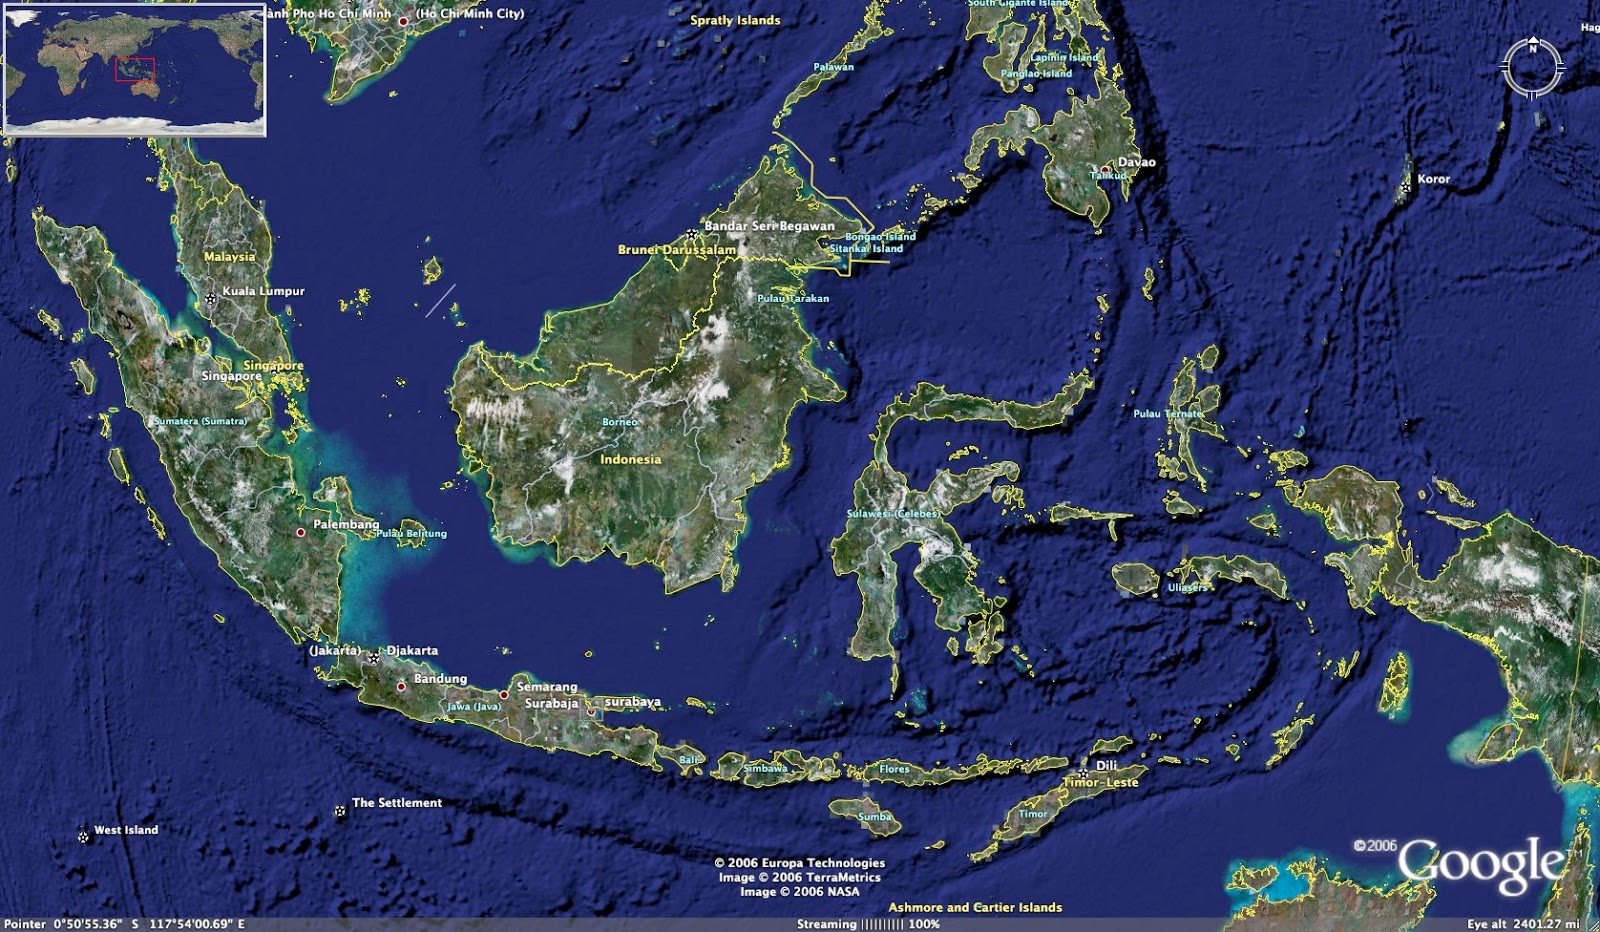  Gambar Peta Indonesia  Lengkap Kumpulan Gambar  Lengkap